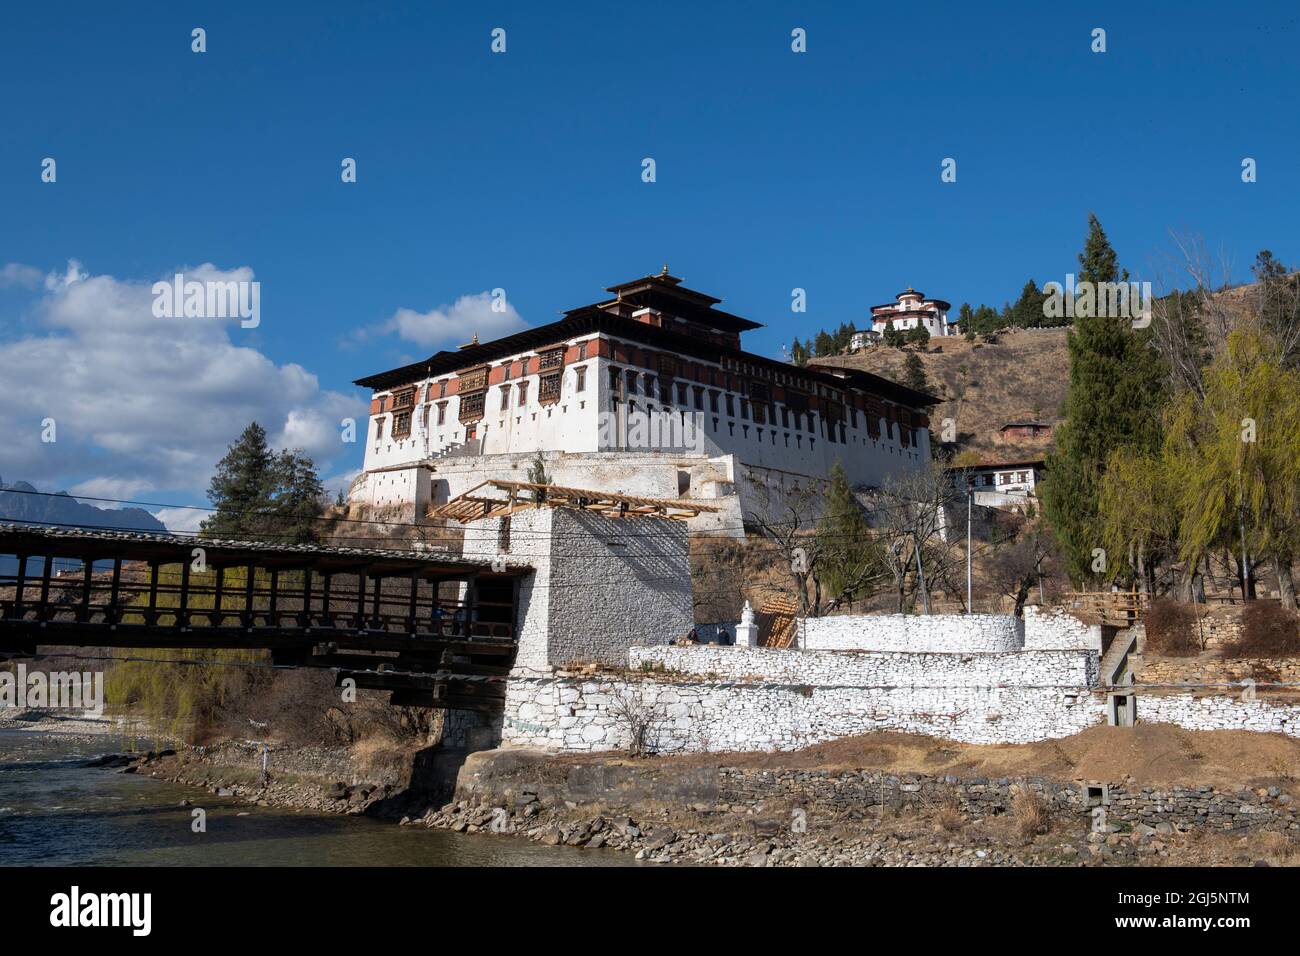 Bhutan, Paro. Rinpung Dzong, Buddhist monastery and fortress. Stock Photo